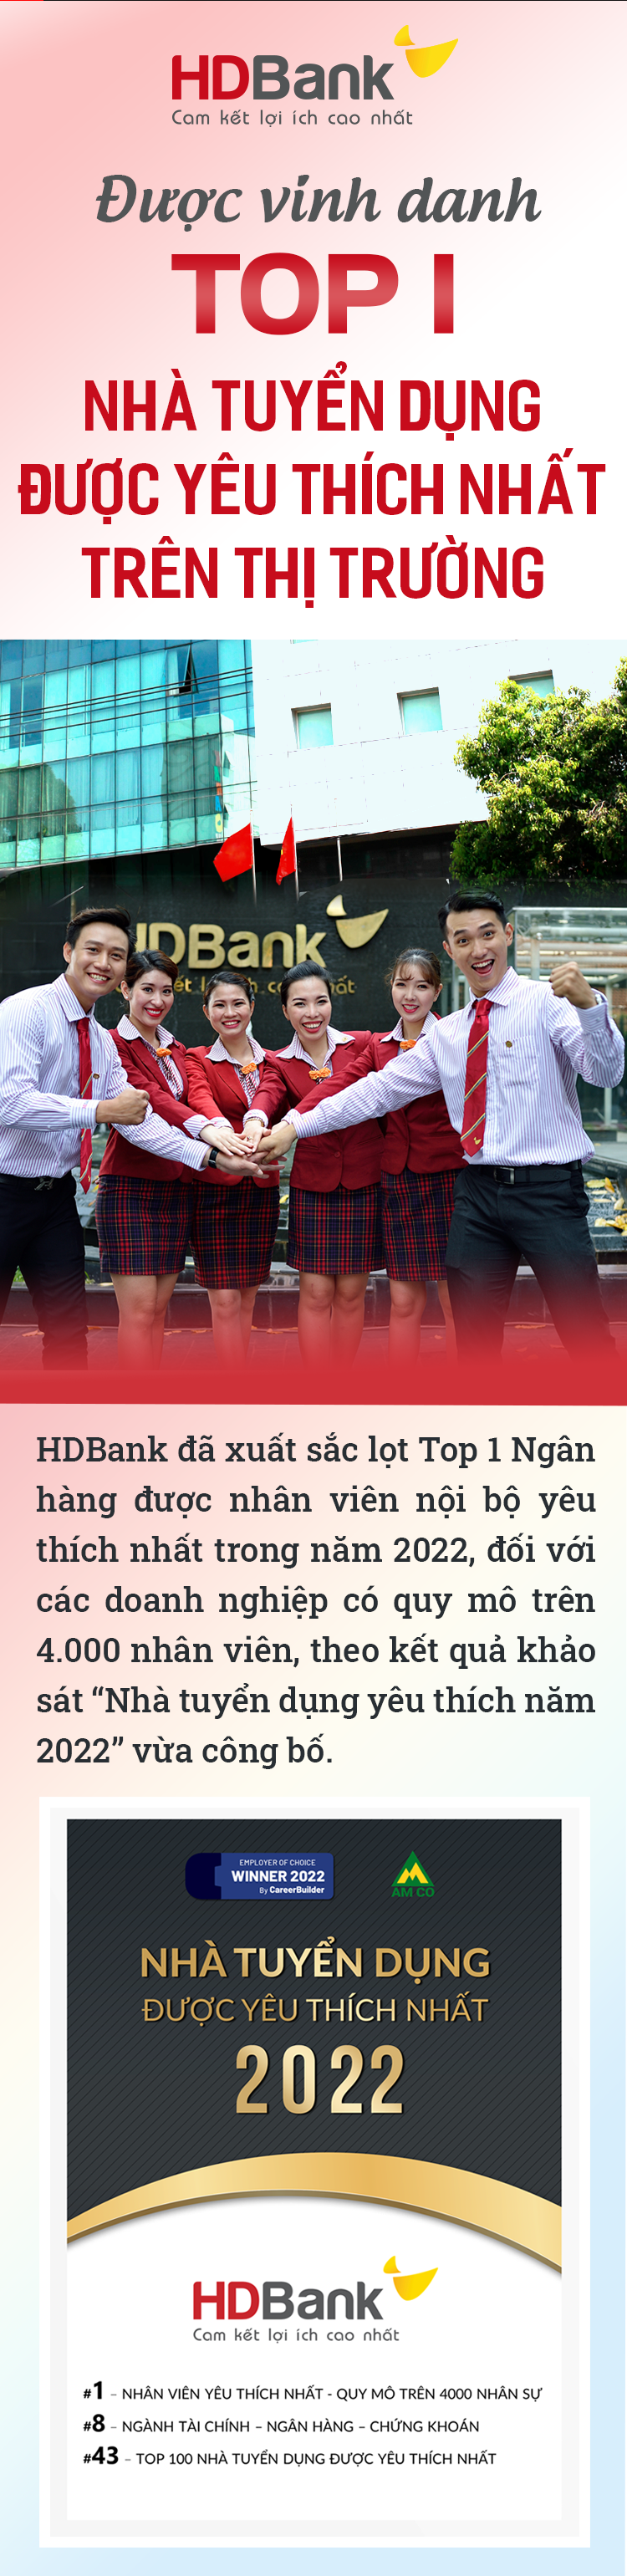 40+ mẫu đồng phục ngân hàng HDBank ấn tượng, thu hút nhất